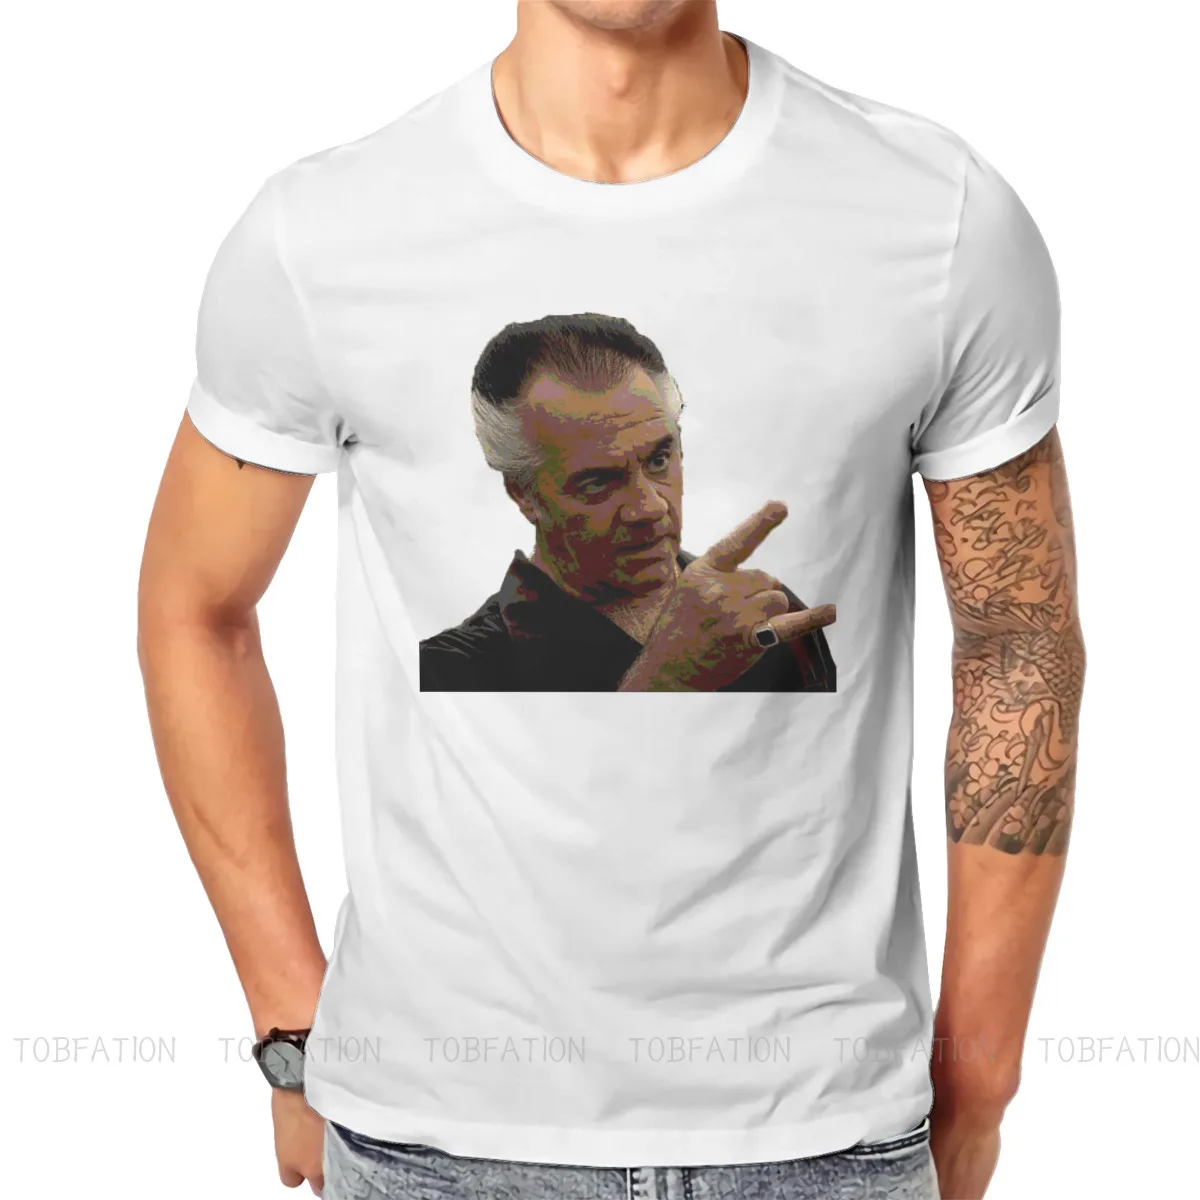 Camiseta de cuello redondo de los Sopranos para hombre, ropa Original, nuevo diseño, de gran tamaño